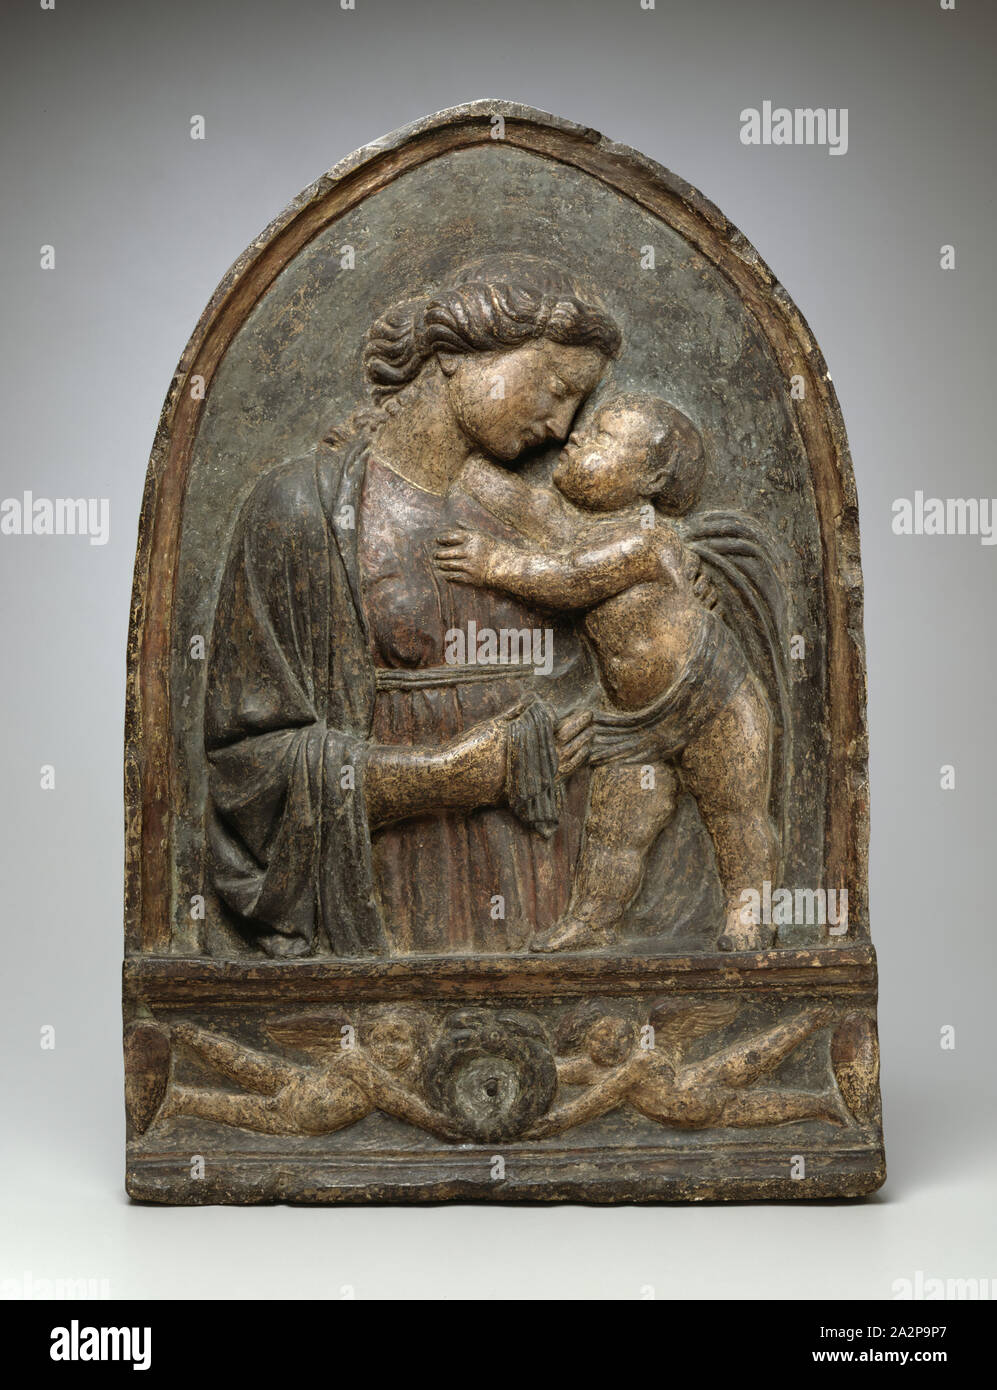 Andrea di Lazzaro Cavalcanti, Italian, 1412 - 1461/62, Madonna and Child, c. 1440/1450, Terracotta with polychrome decoration, Overall: 31 7/8 × 22 × 3 1/4 inches (81 × 55.9 × 8.3 cm Stock Photo